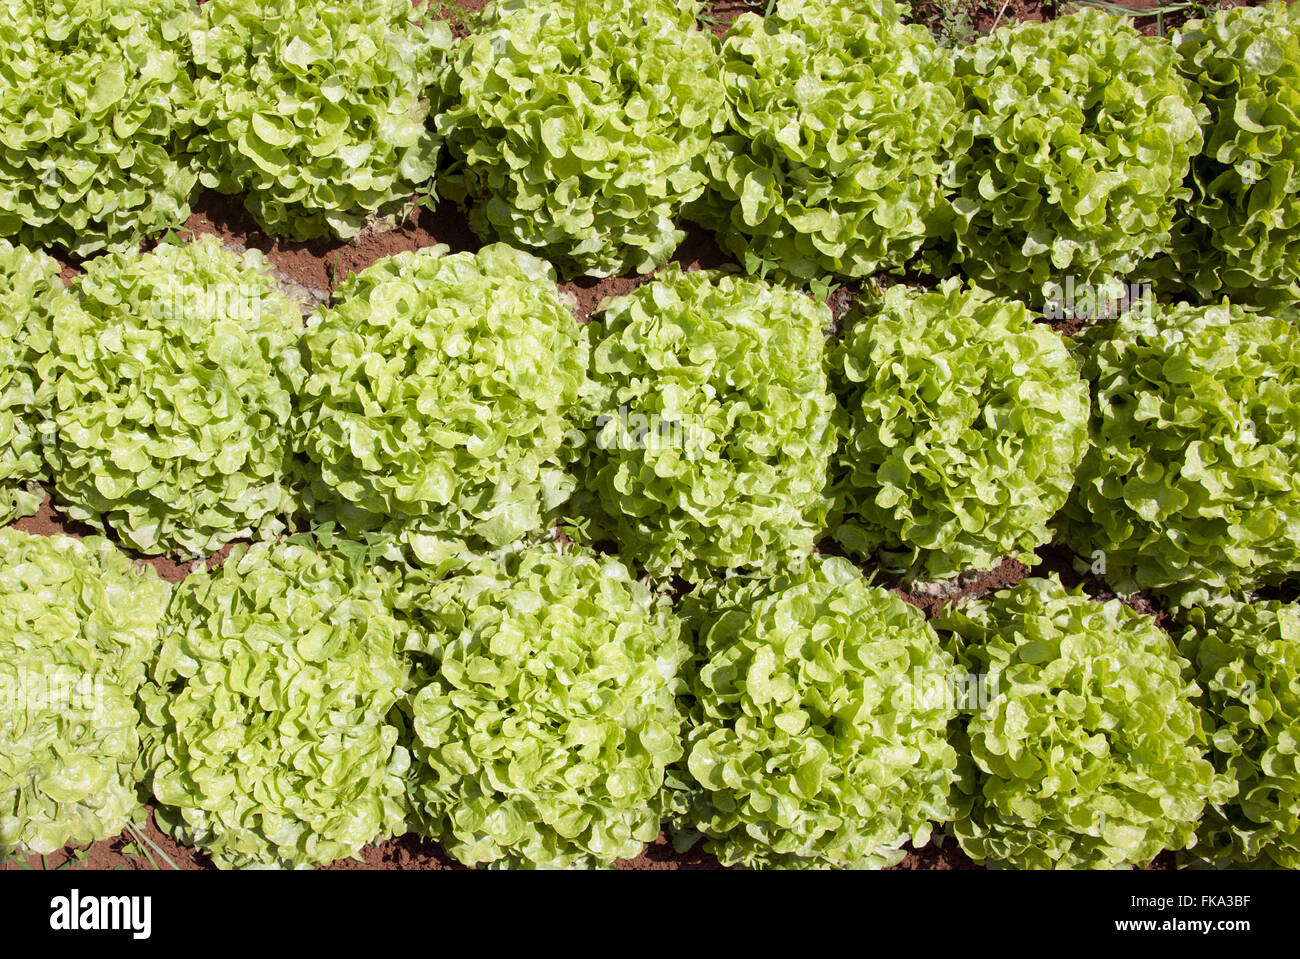 Serra con insalata verde per la ricerca e il miglioramento genetico Foto Stock